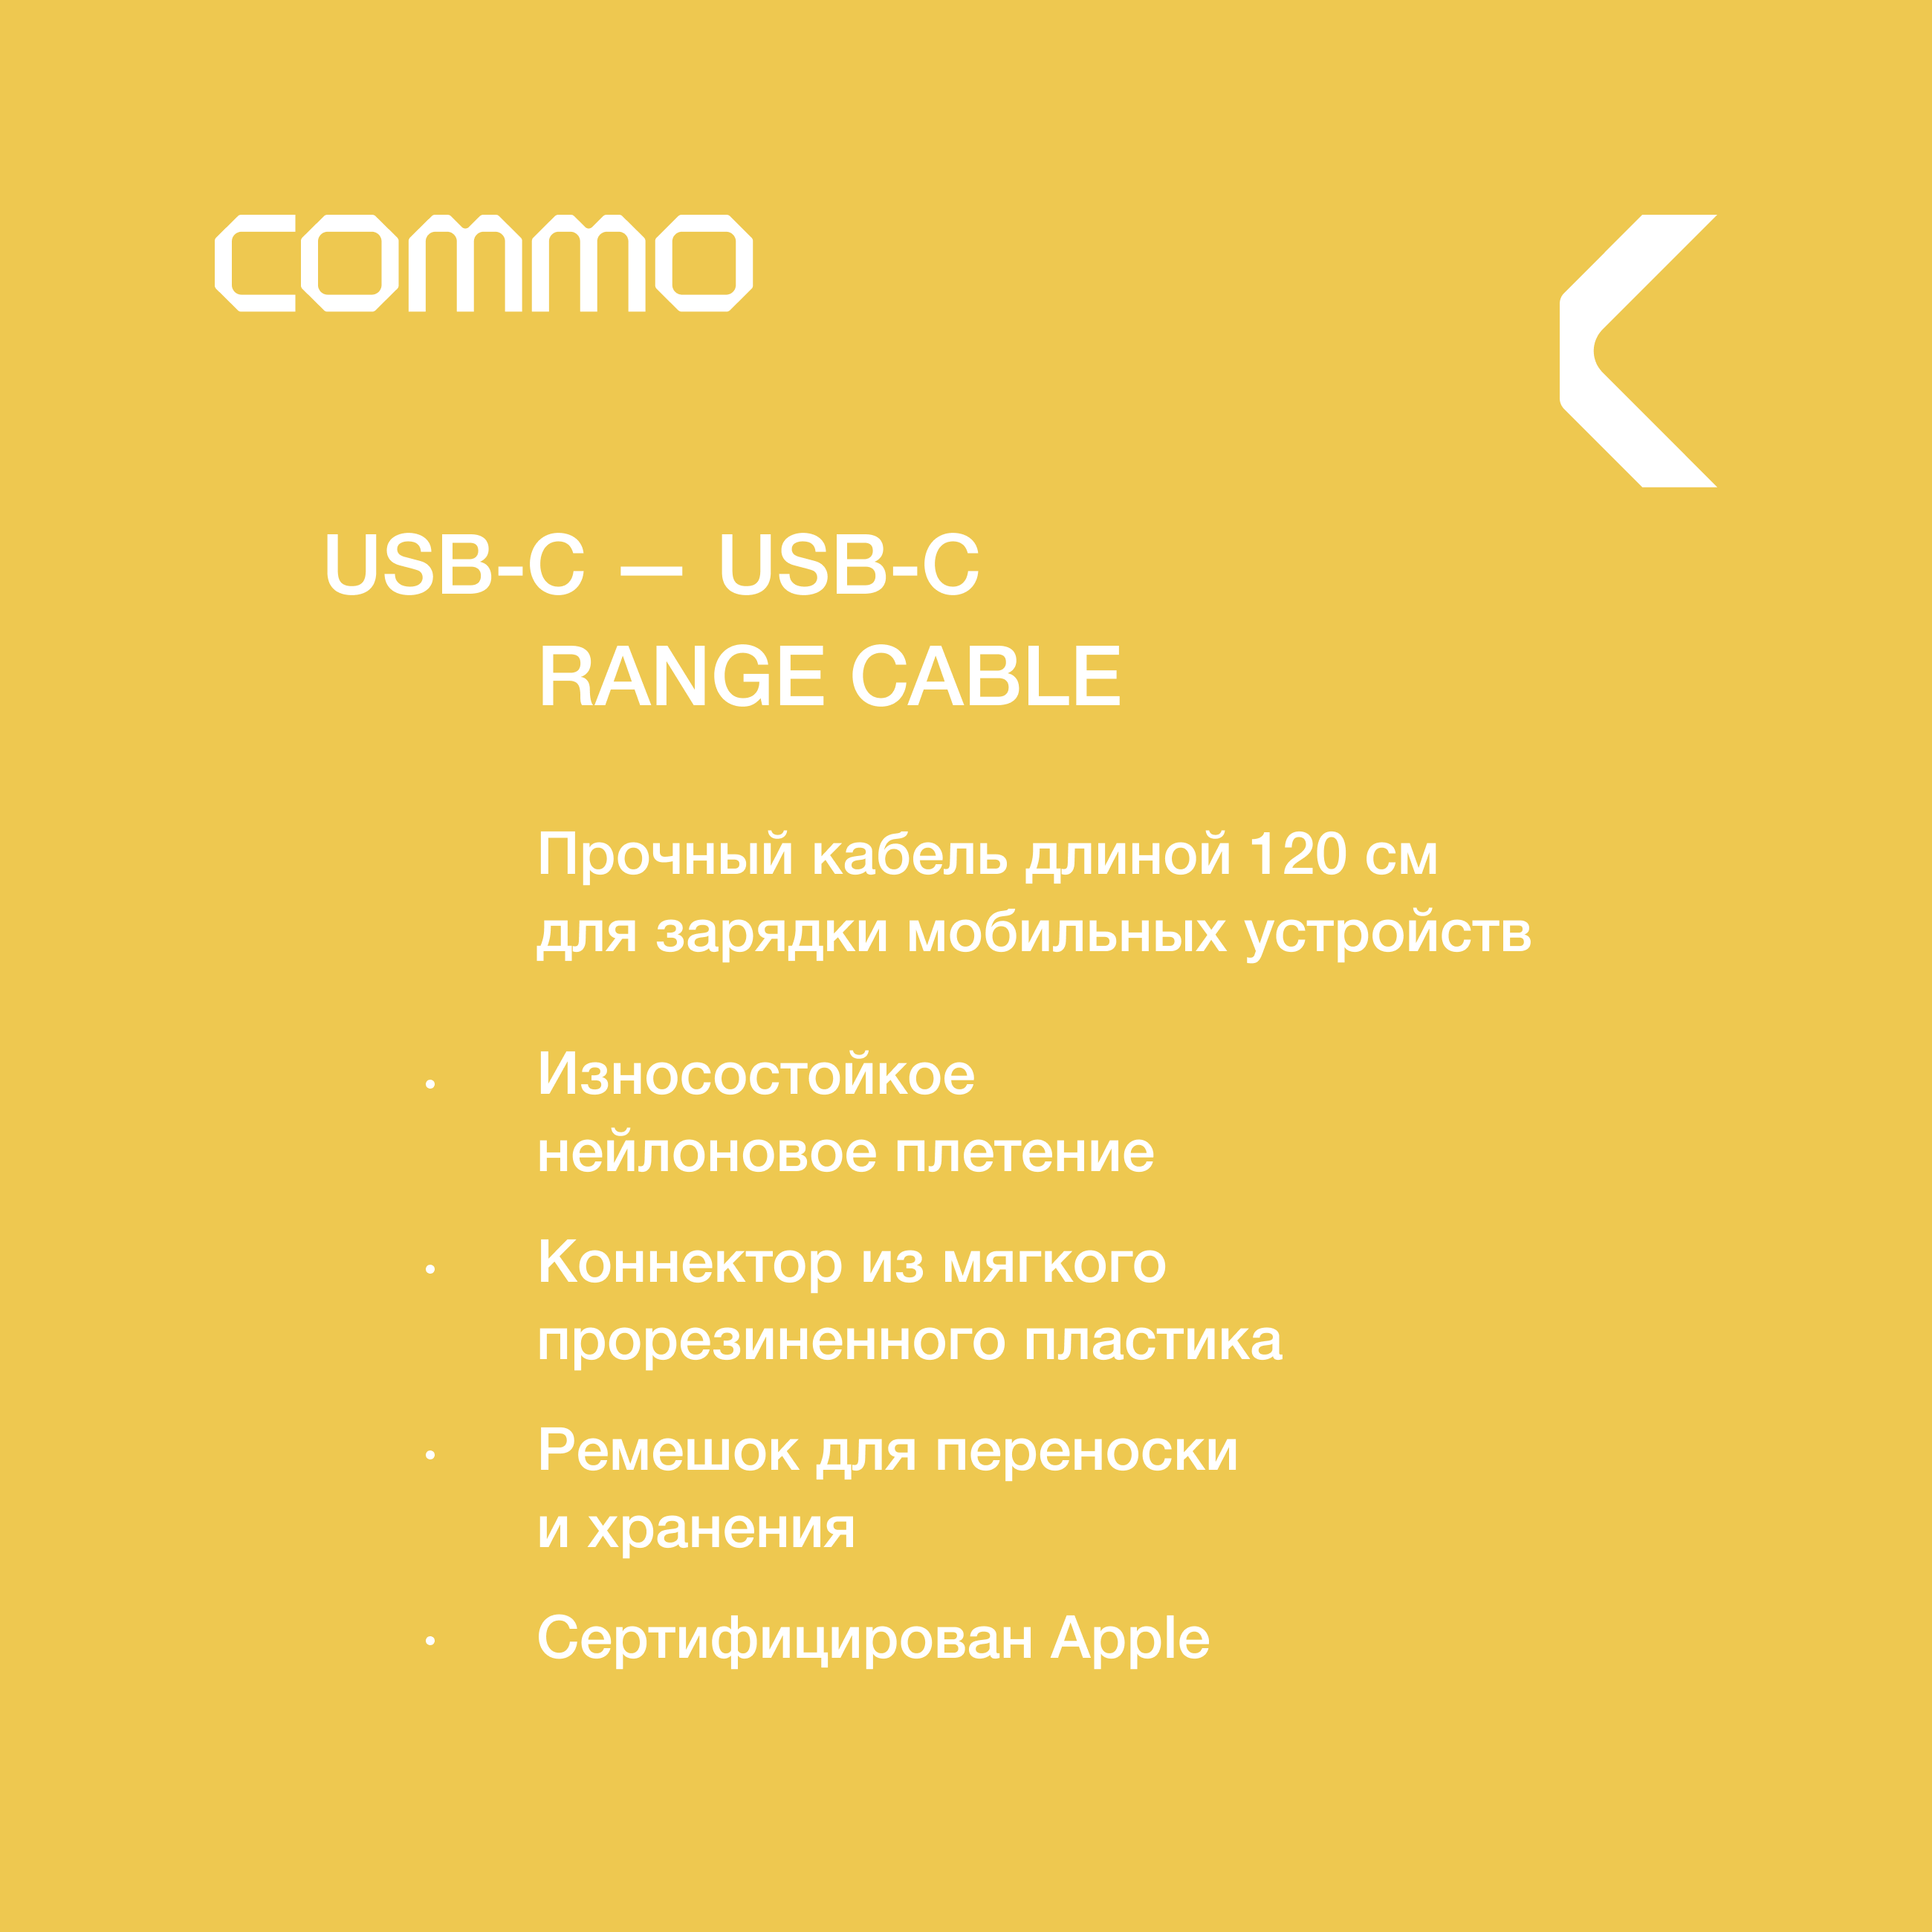 Кабель COMMO Range Cable USB-C - USB-C, 1.2 м, Graphite